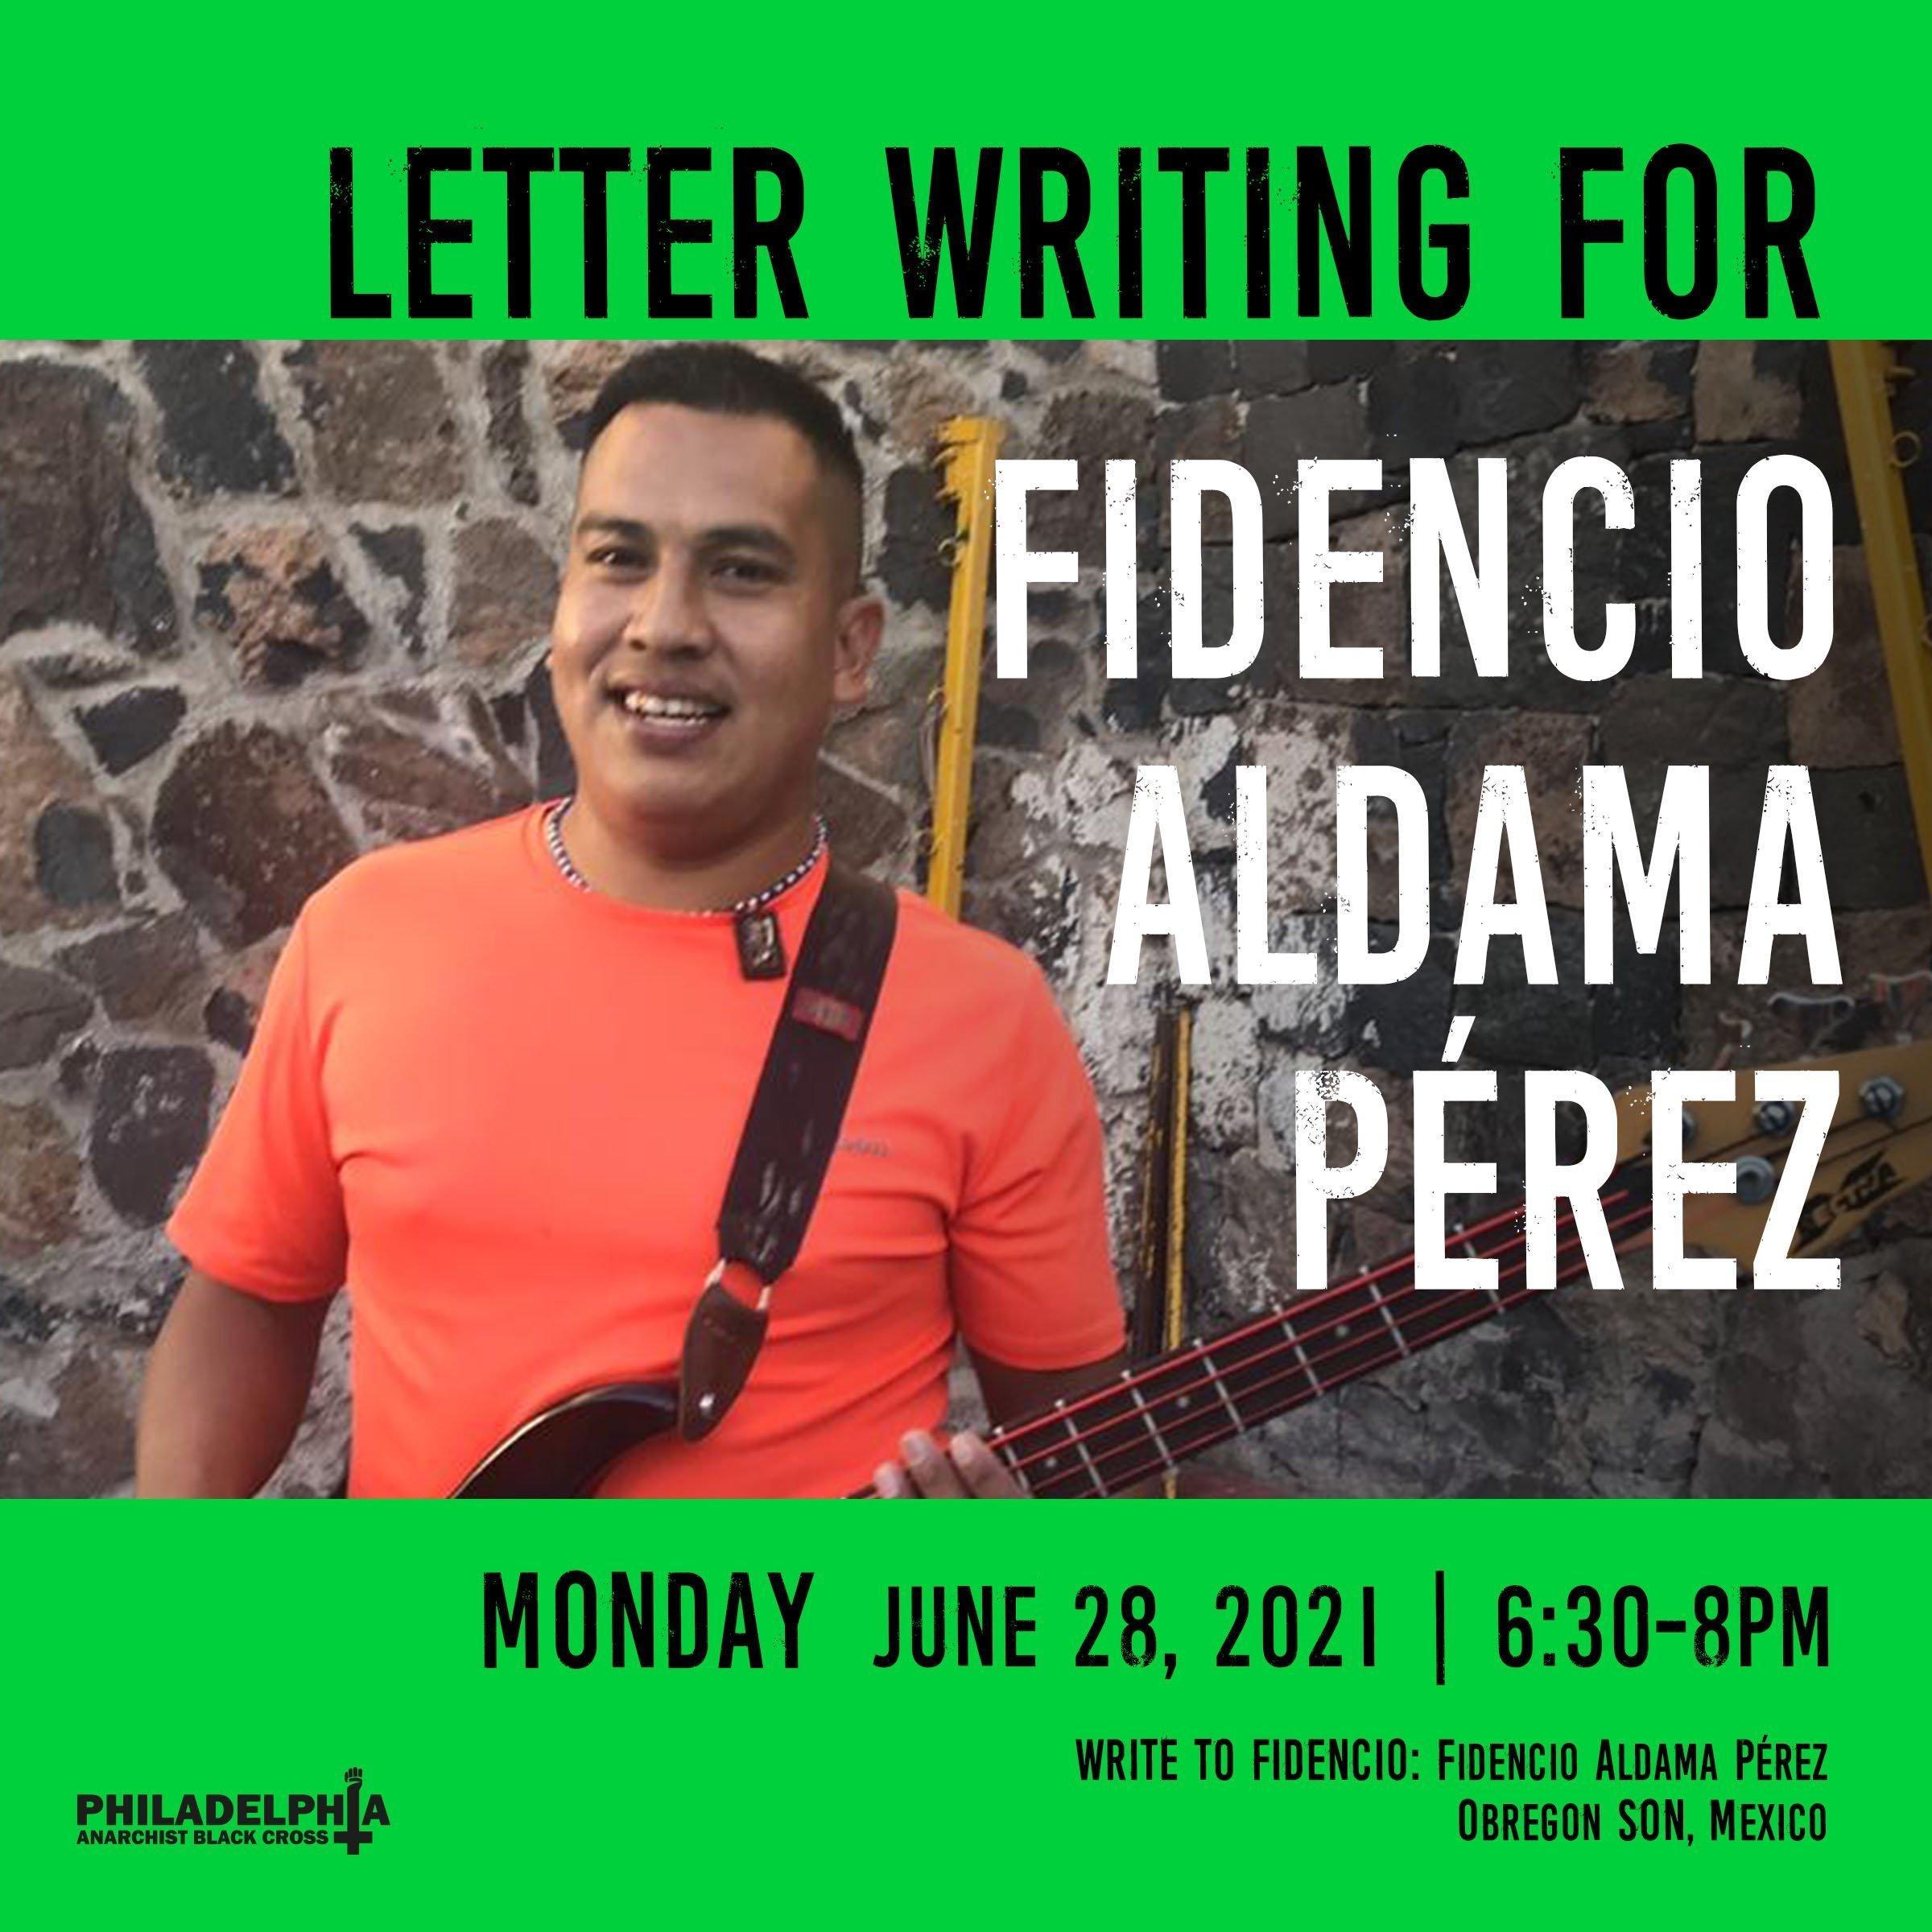 Monday June 28th: Letter-writing for Fidencio Aldama Perez